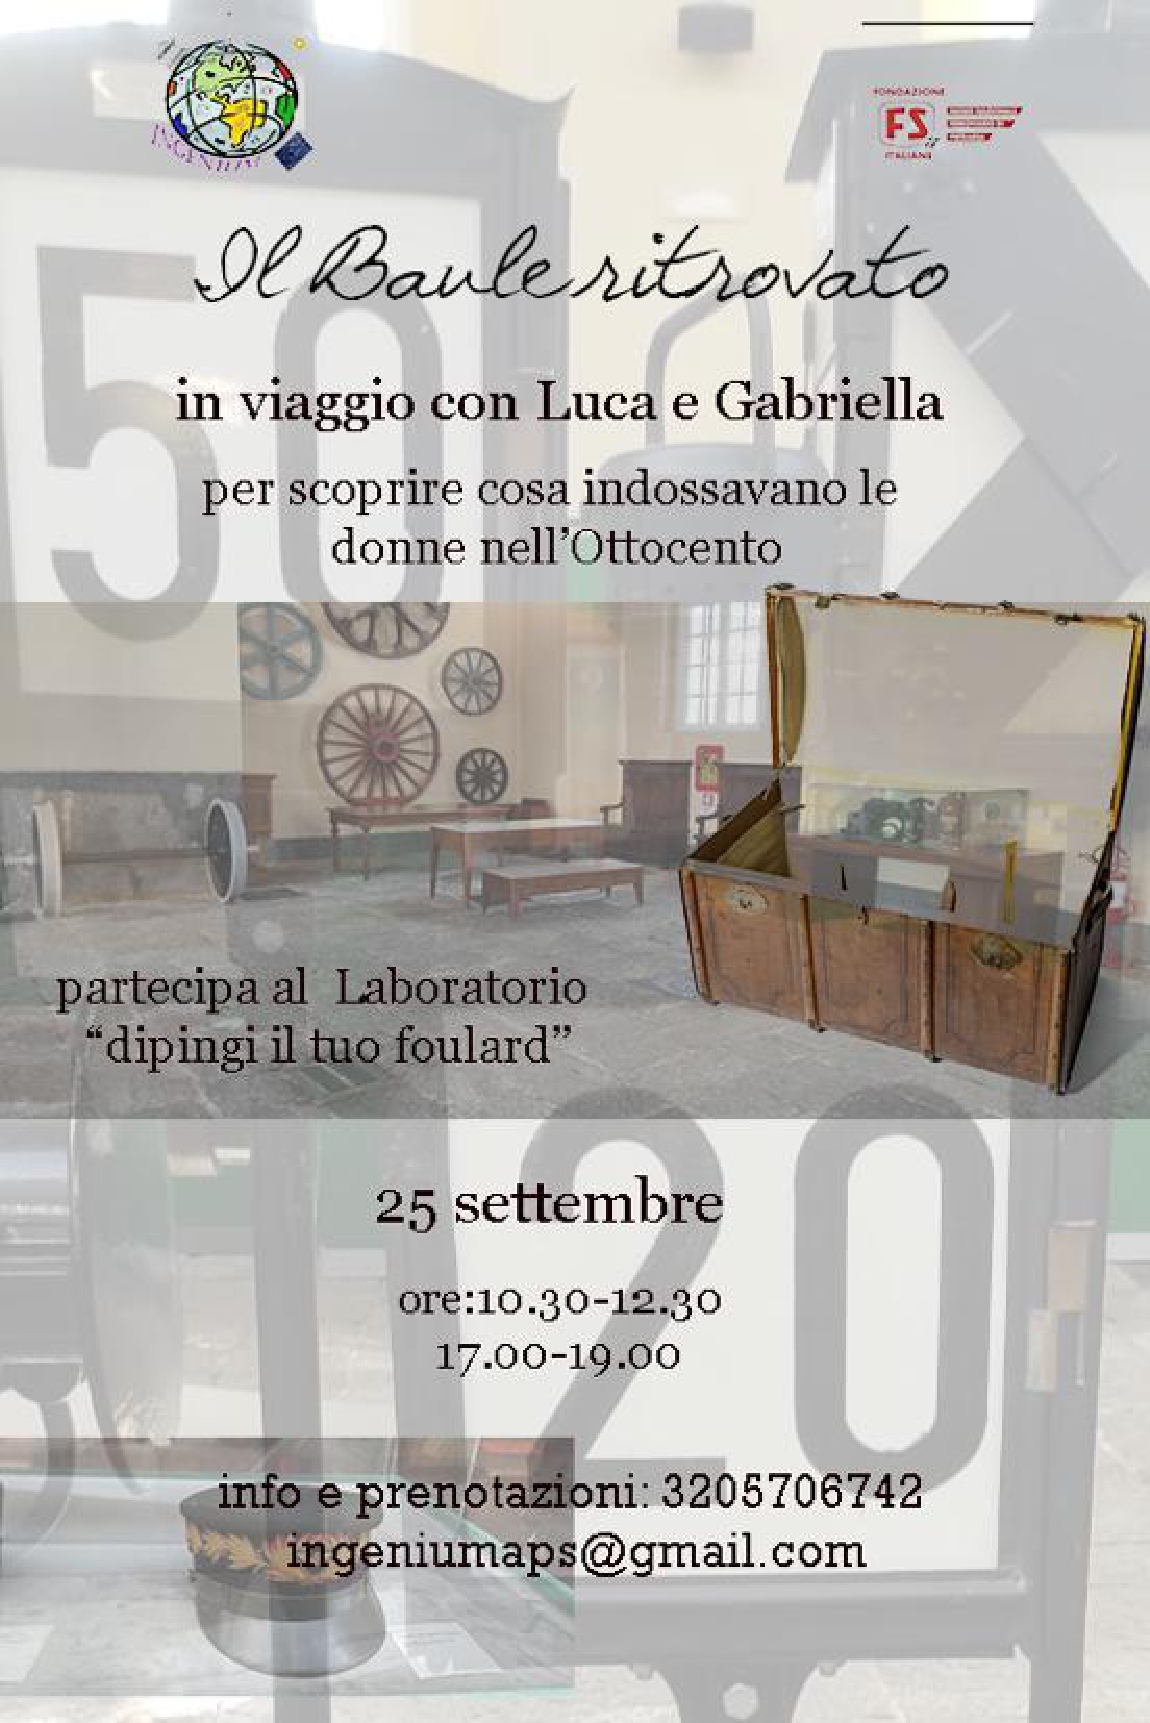 Napoli: Fondazione FS, a Museo di Pietrarsa “Il baule ritrovato”